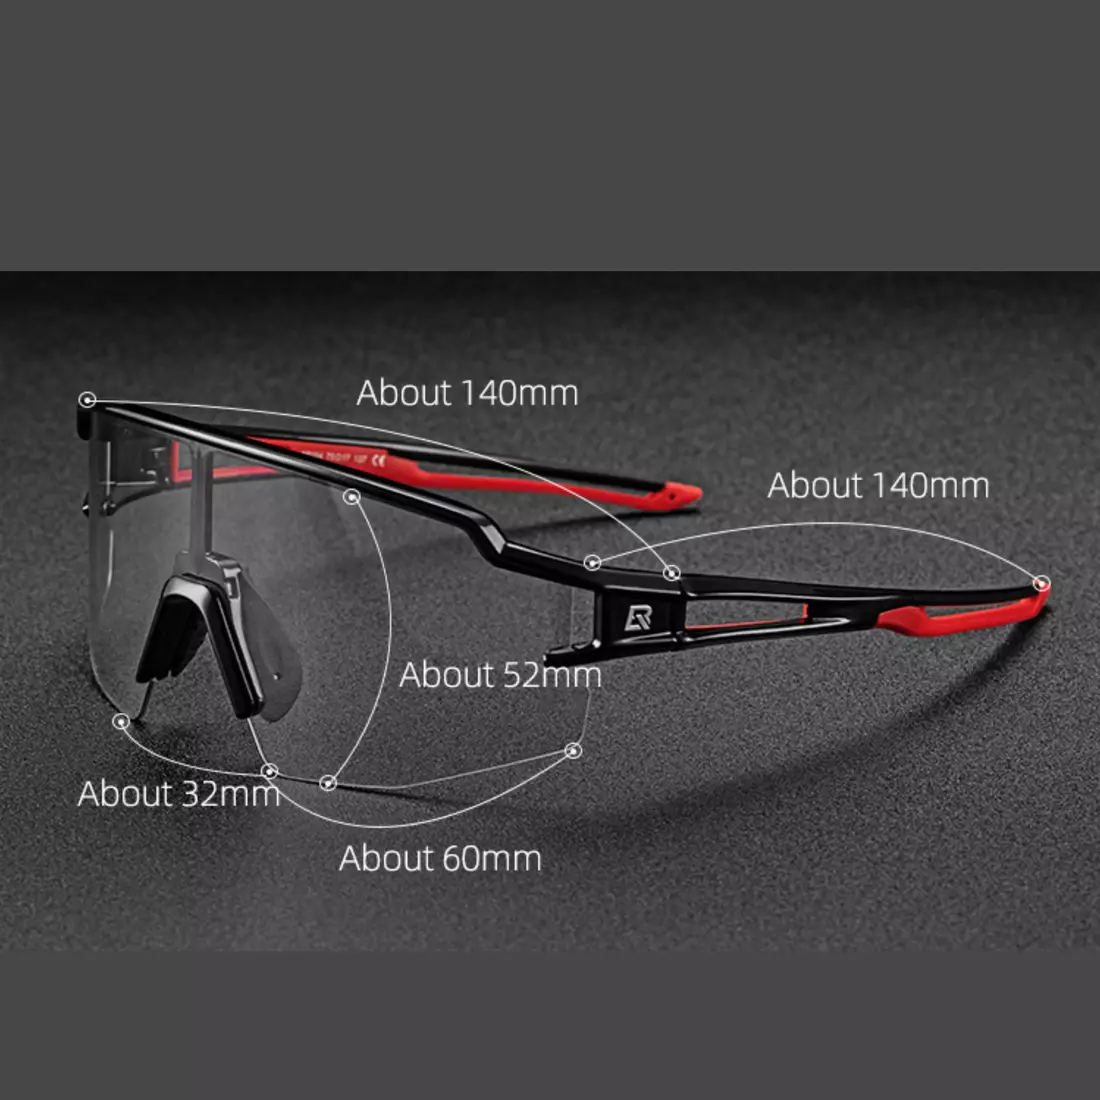 Rockbros 10175 Sportbrille mit Photochrom + Korrektureinsatz schwarz